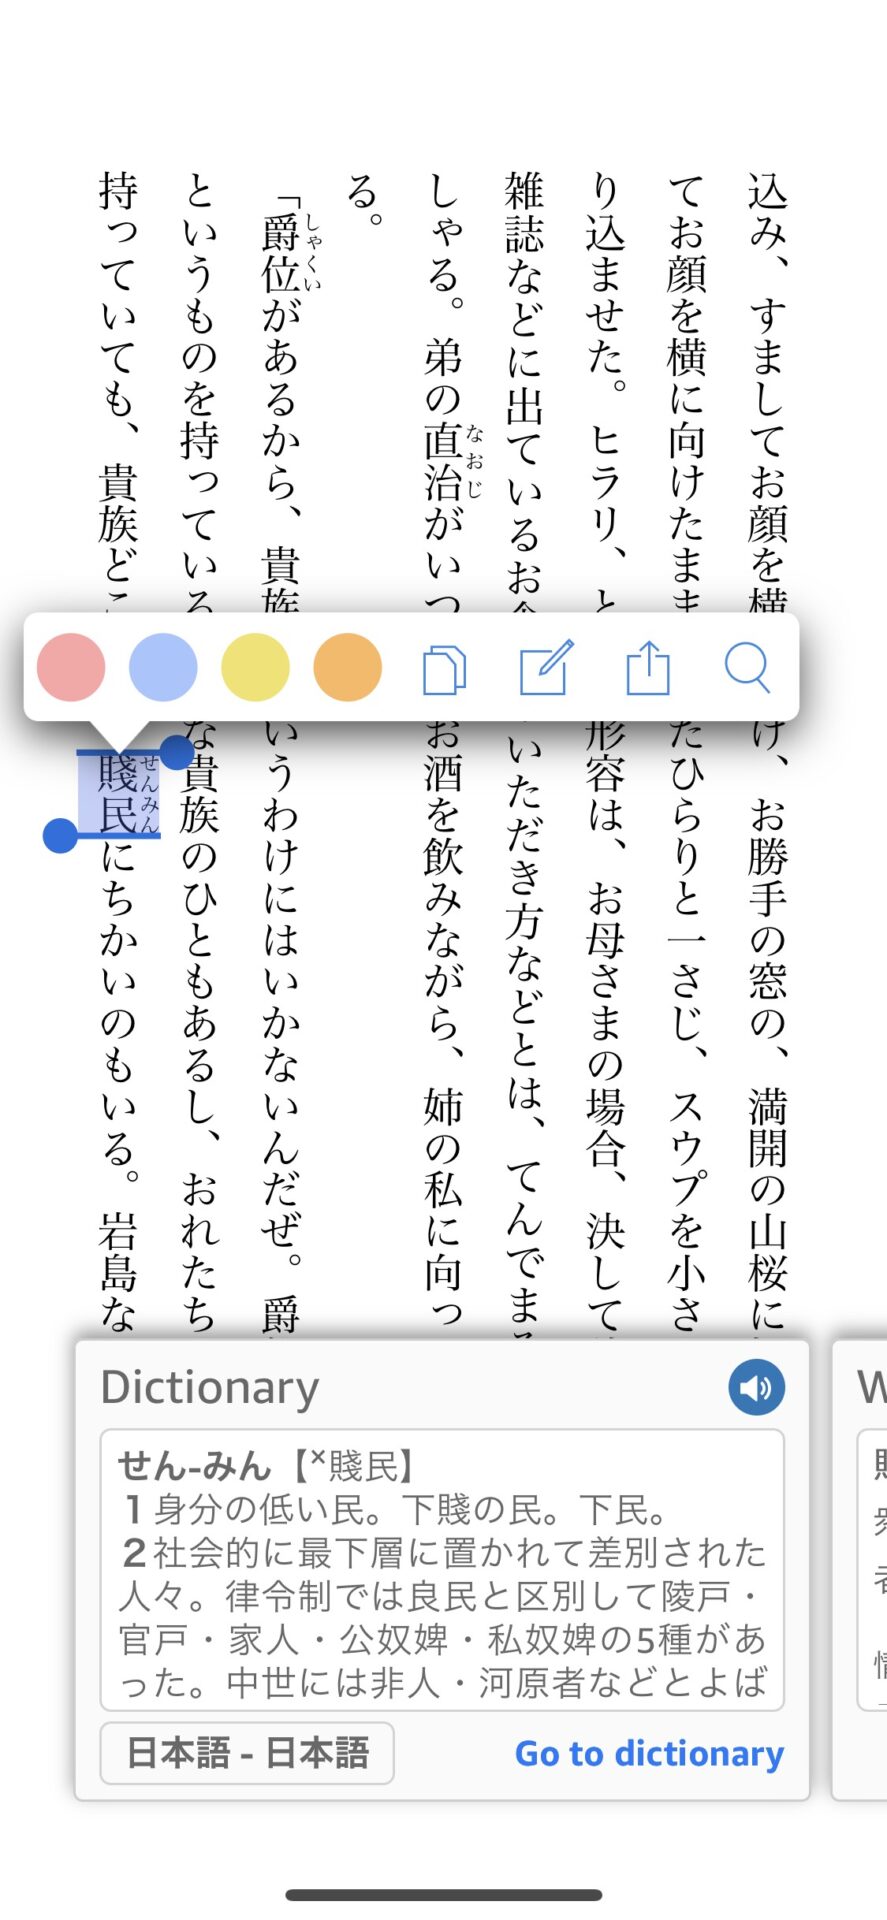 Kindleの辞書機能スマートフォン